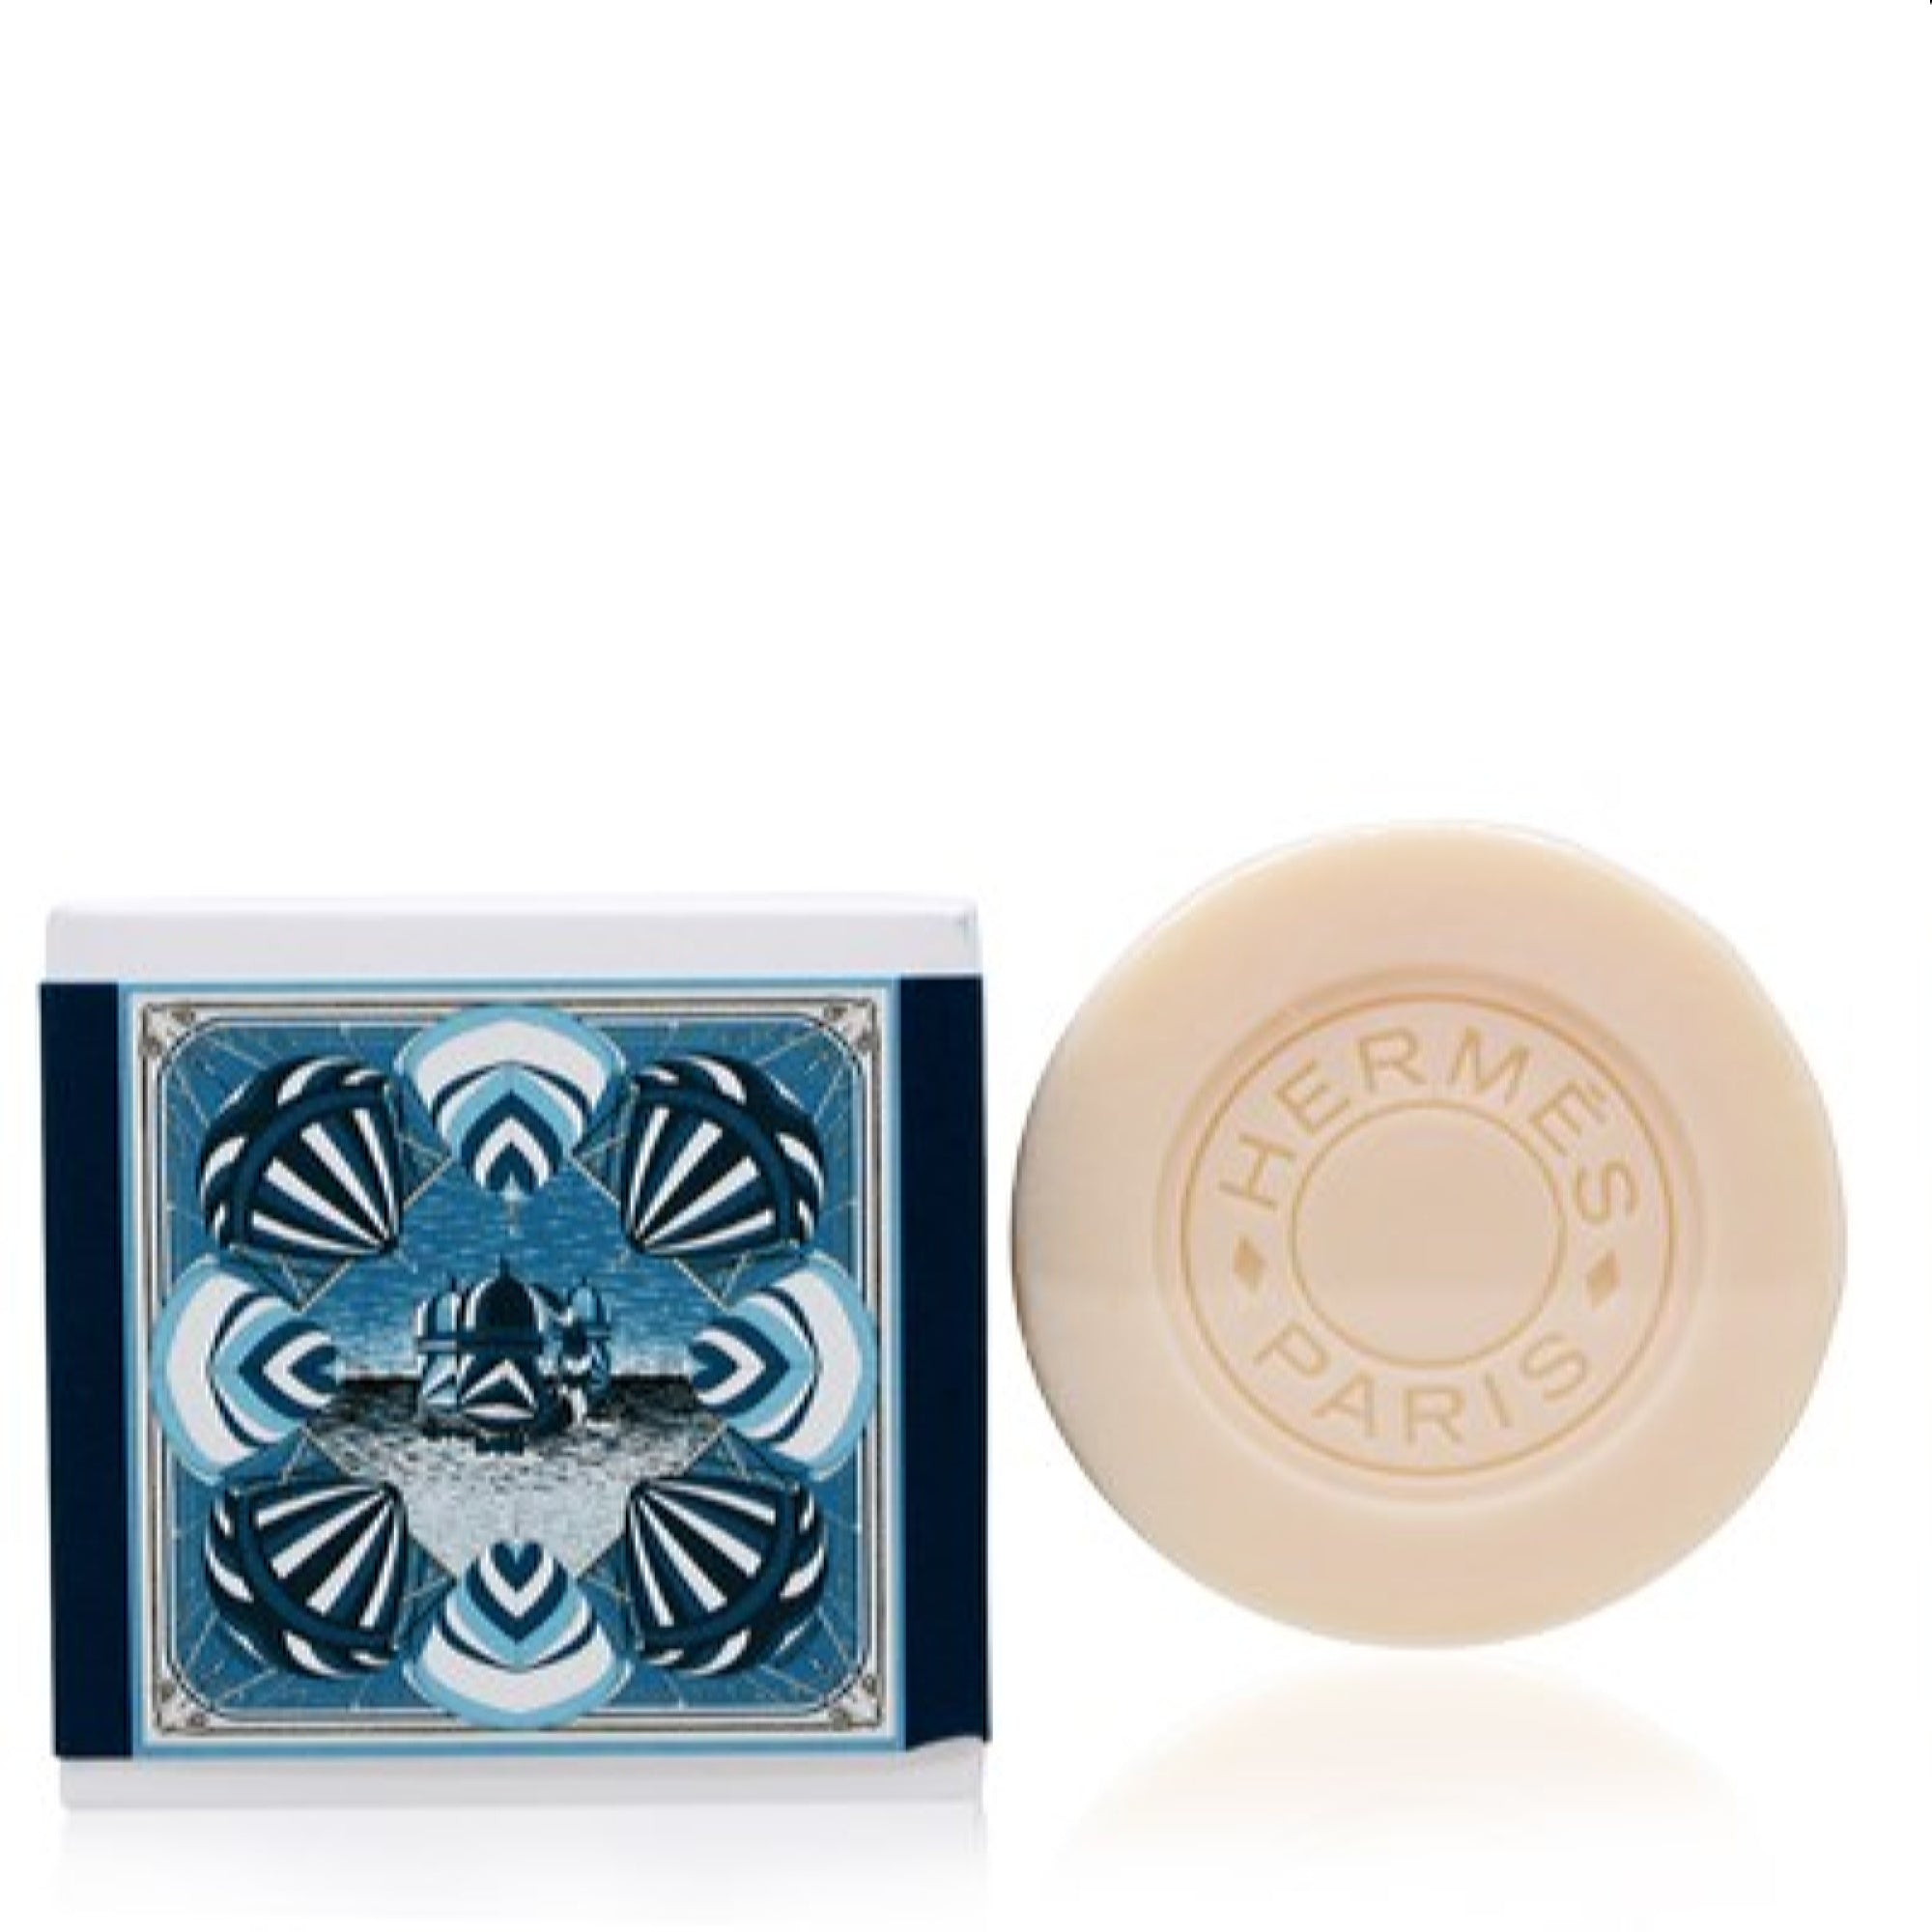 Eau De Narcisse Bleu / Hermes Soap 3.5 oz (100 ml) (U)